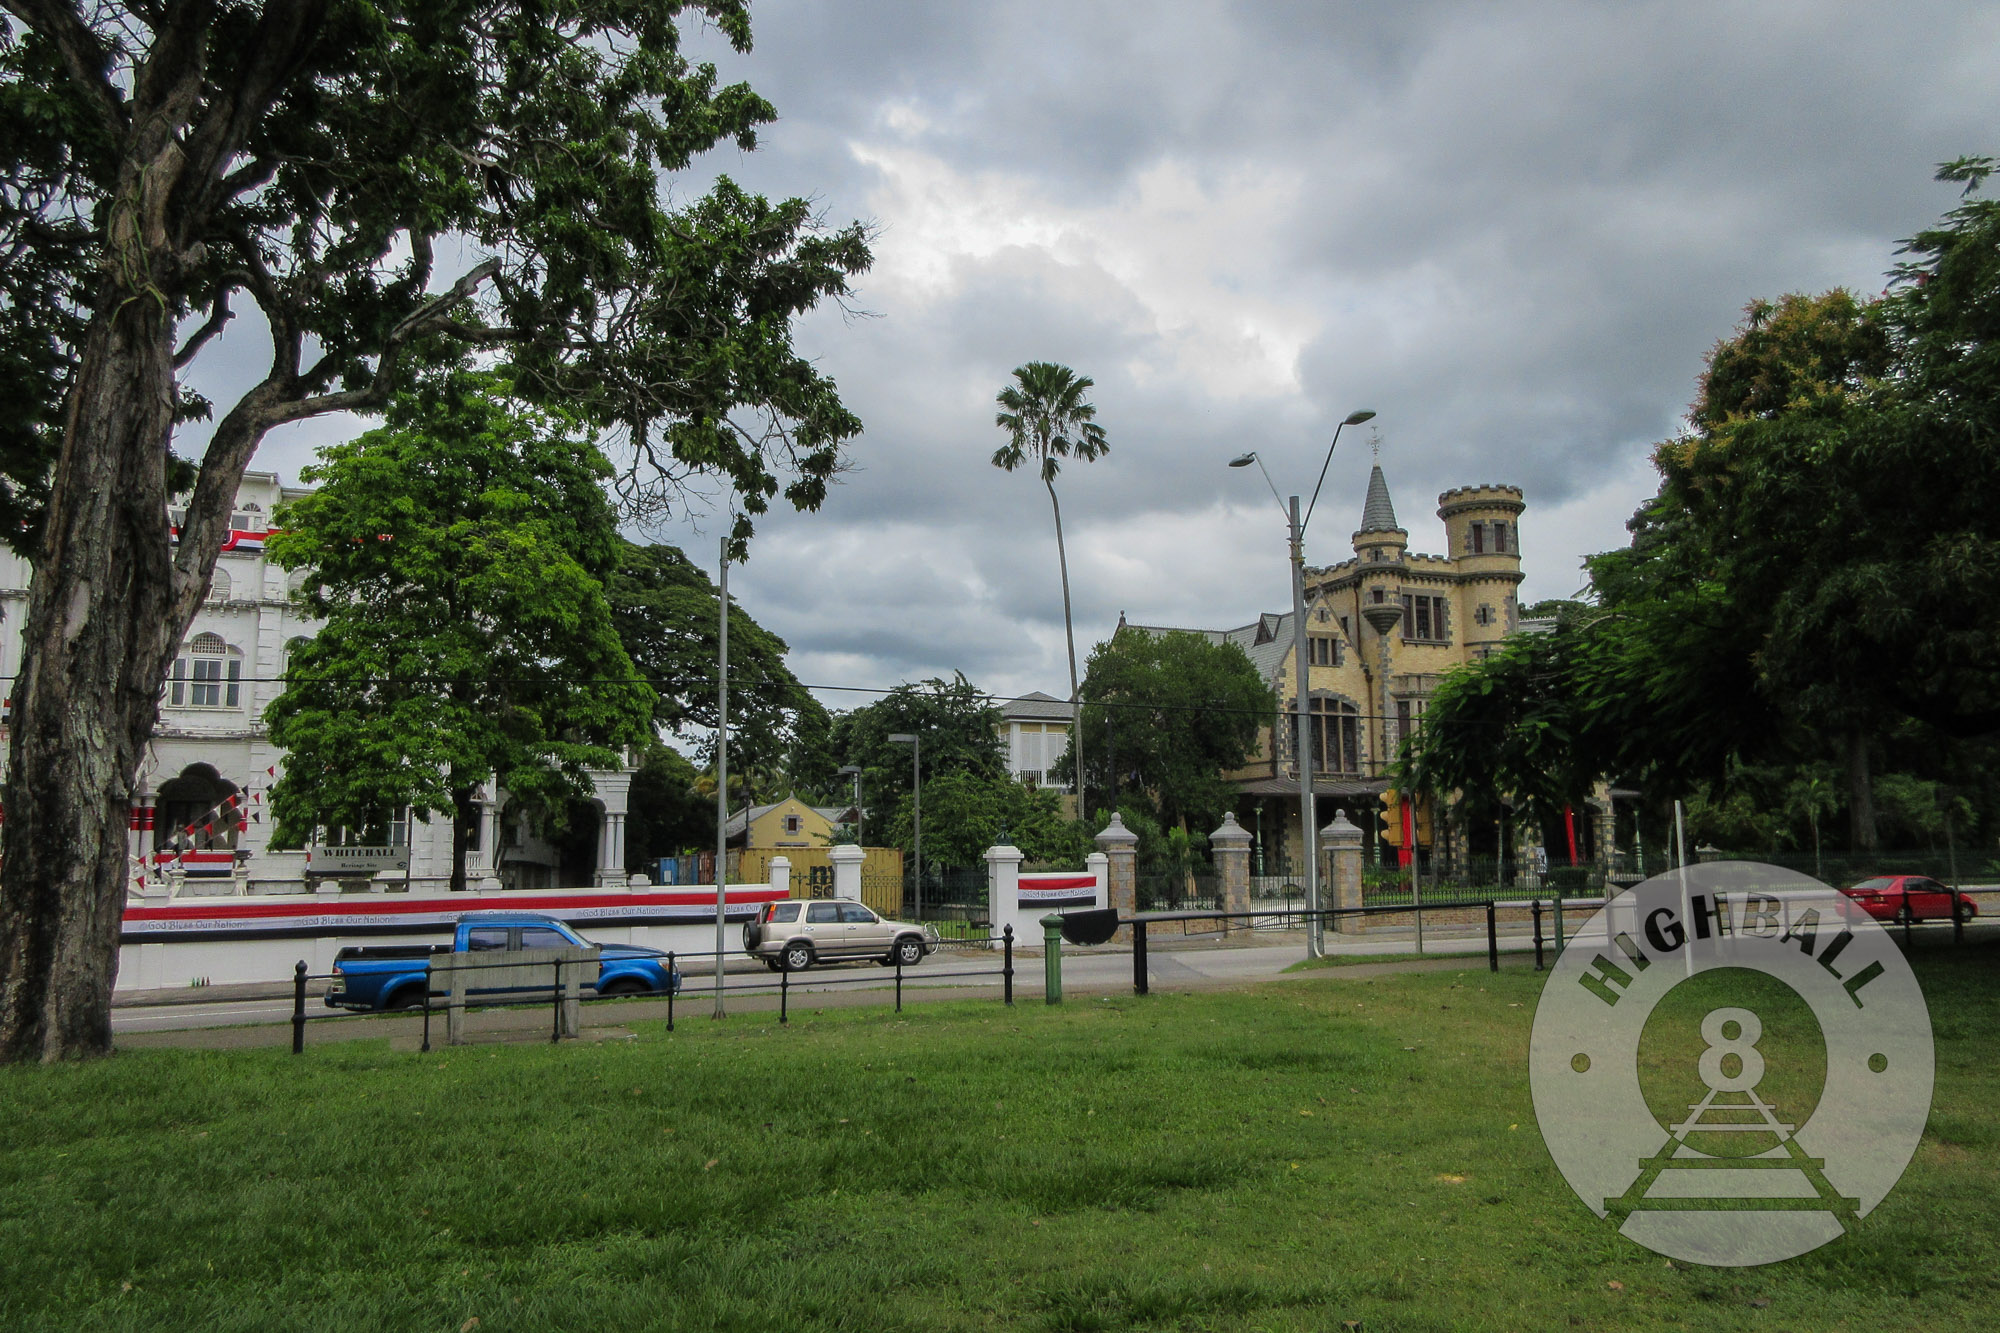 Queen's Park Savannah, Port of Spain, Trinidad & Tobago, 2018.